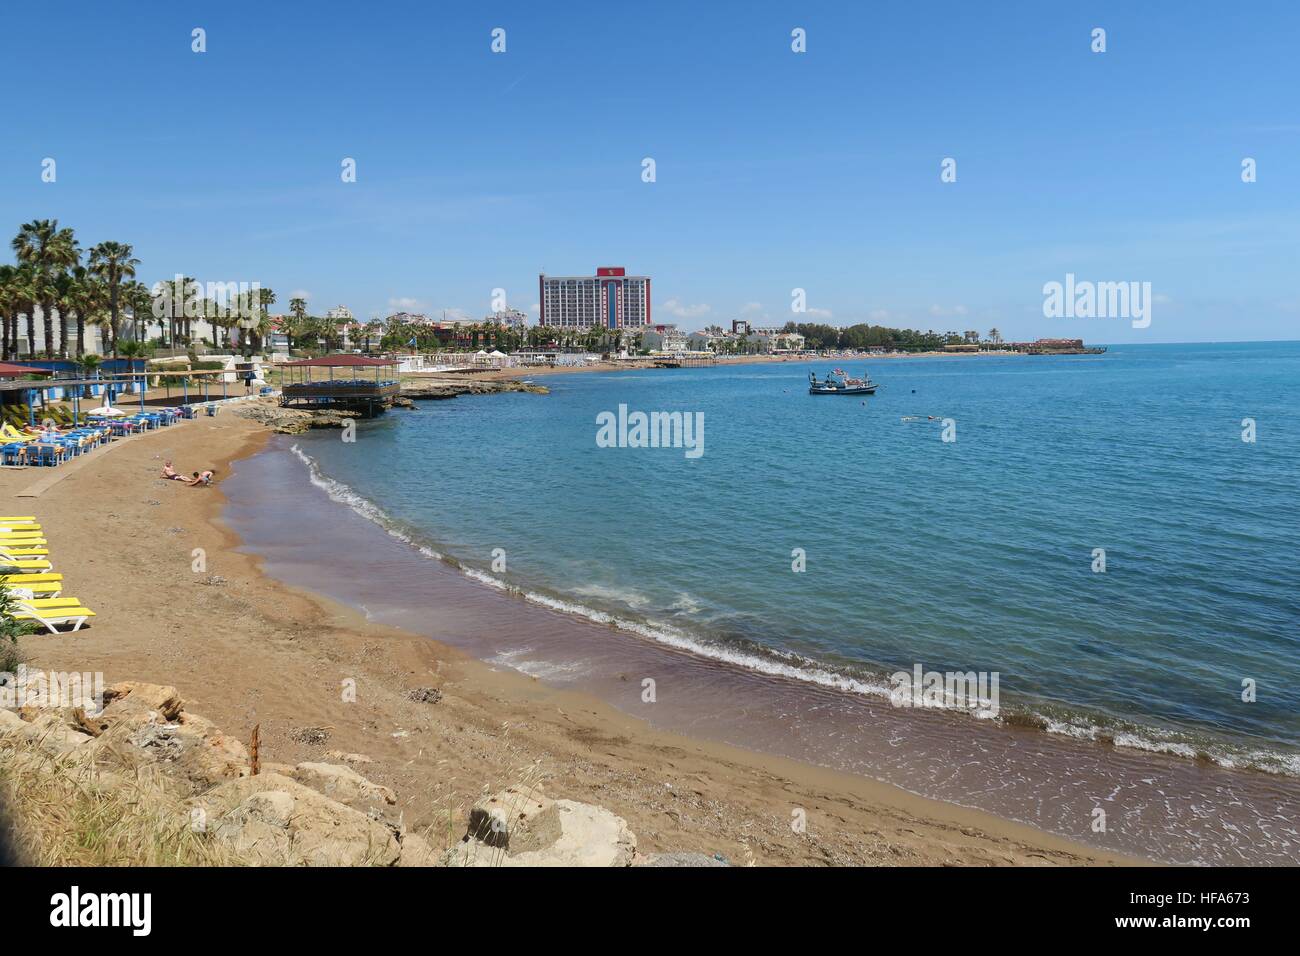 Hotels at Lara Beach in Antalya, Turkey Stock Photo